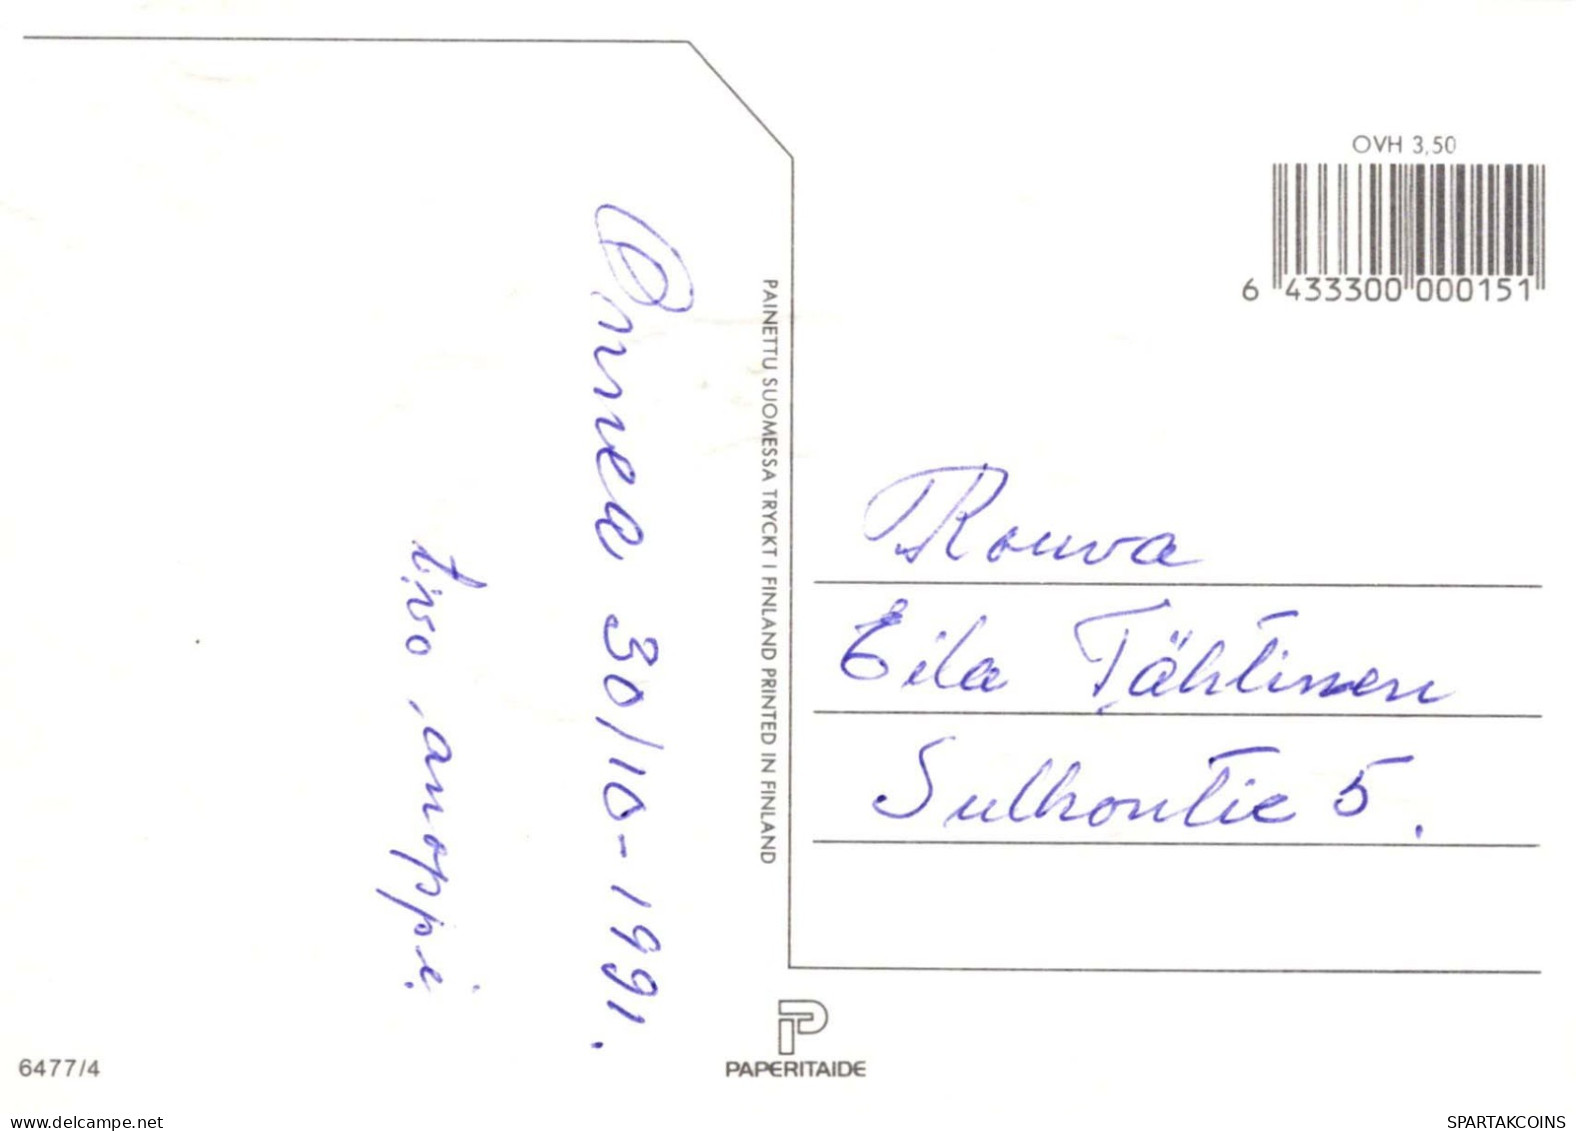 FLORES Vintage Tarjeta Postal CPSM #PAR322.ES - Fleurs